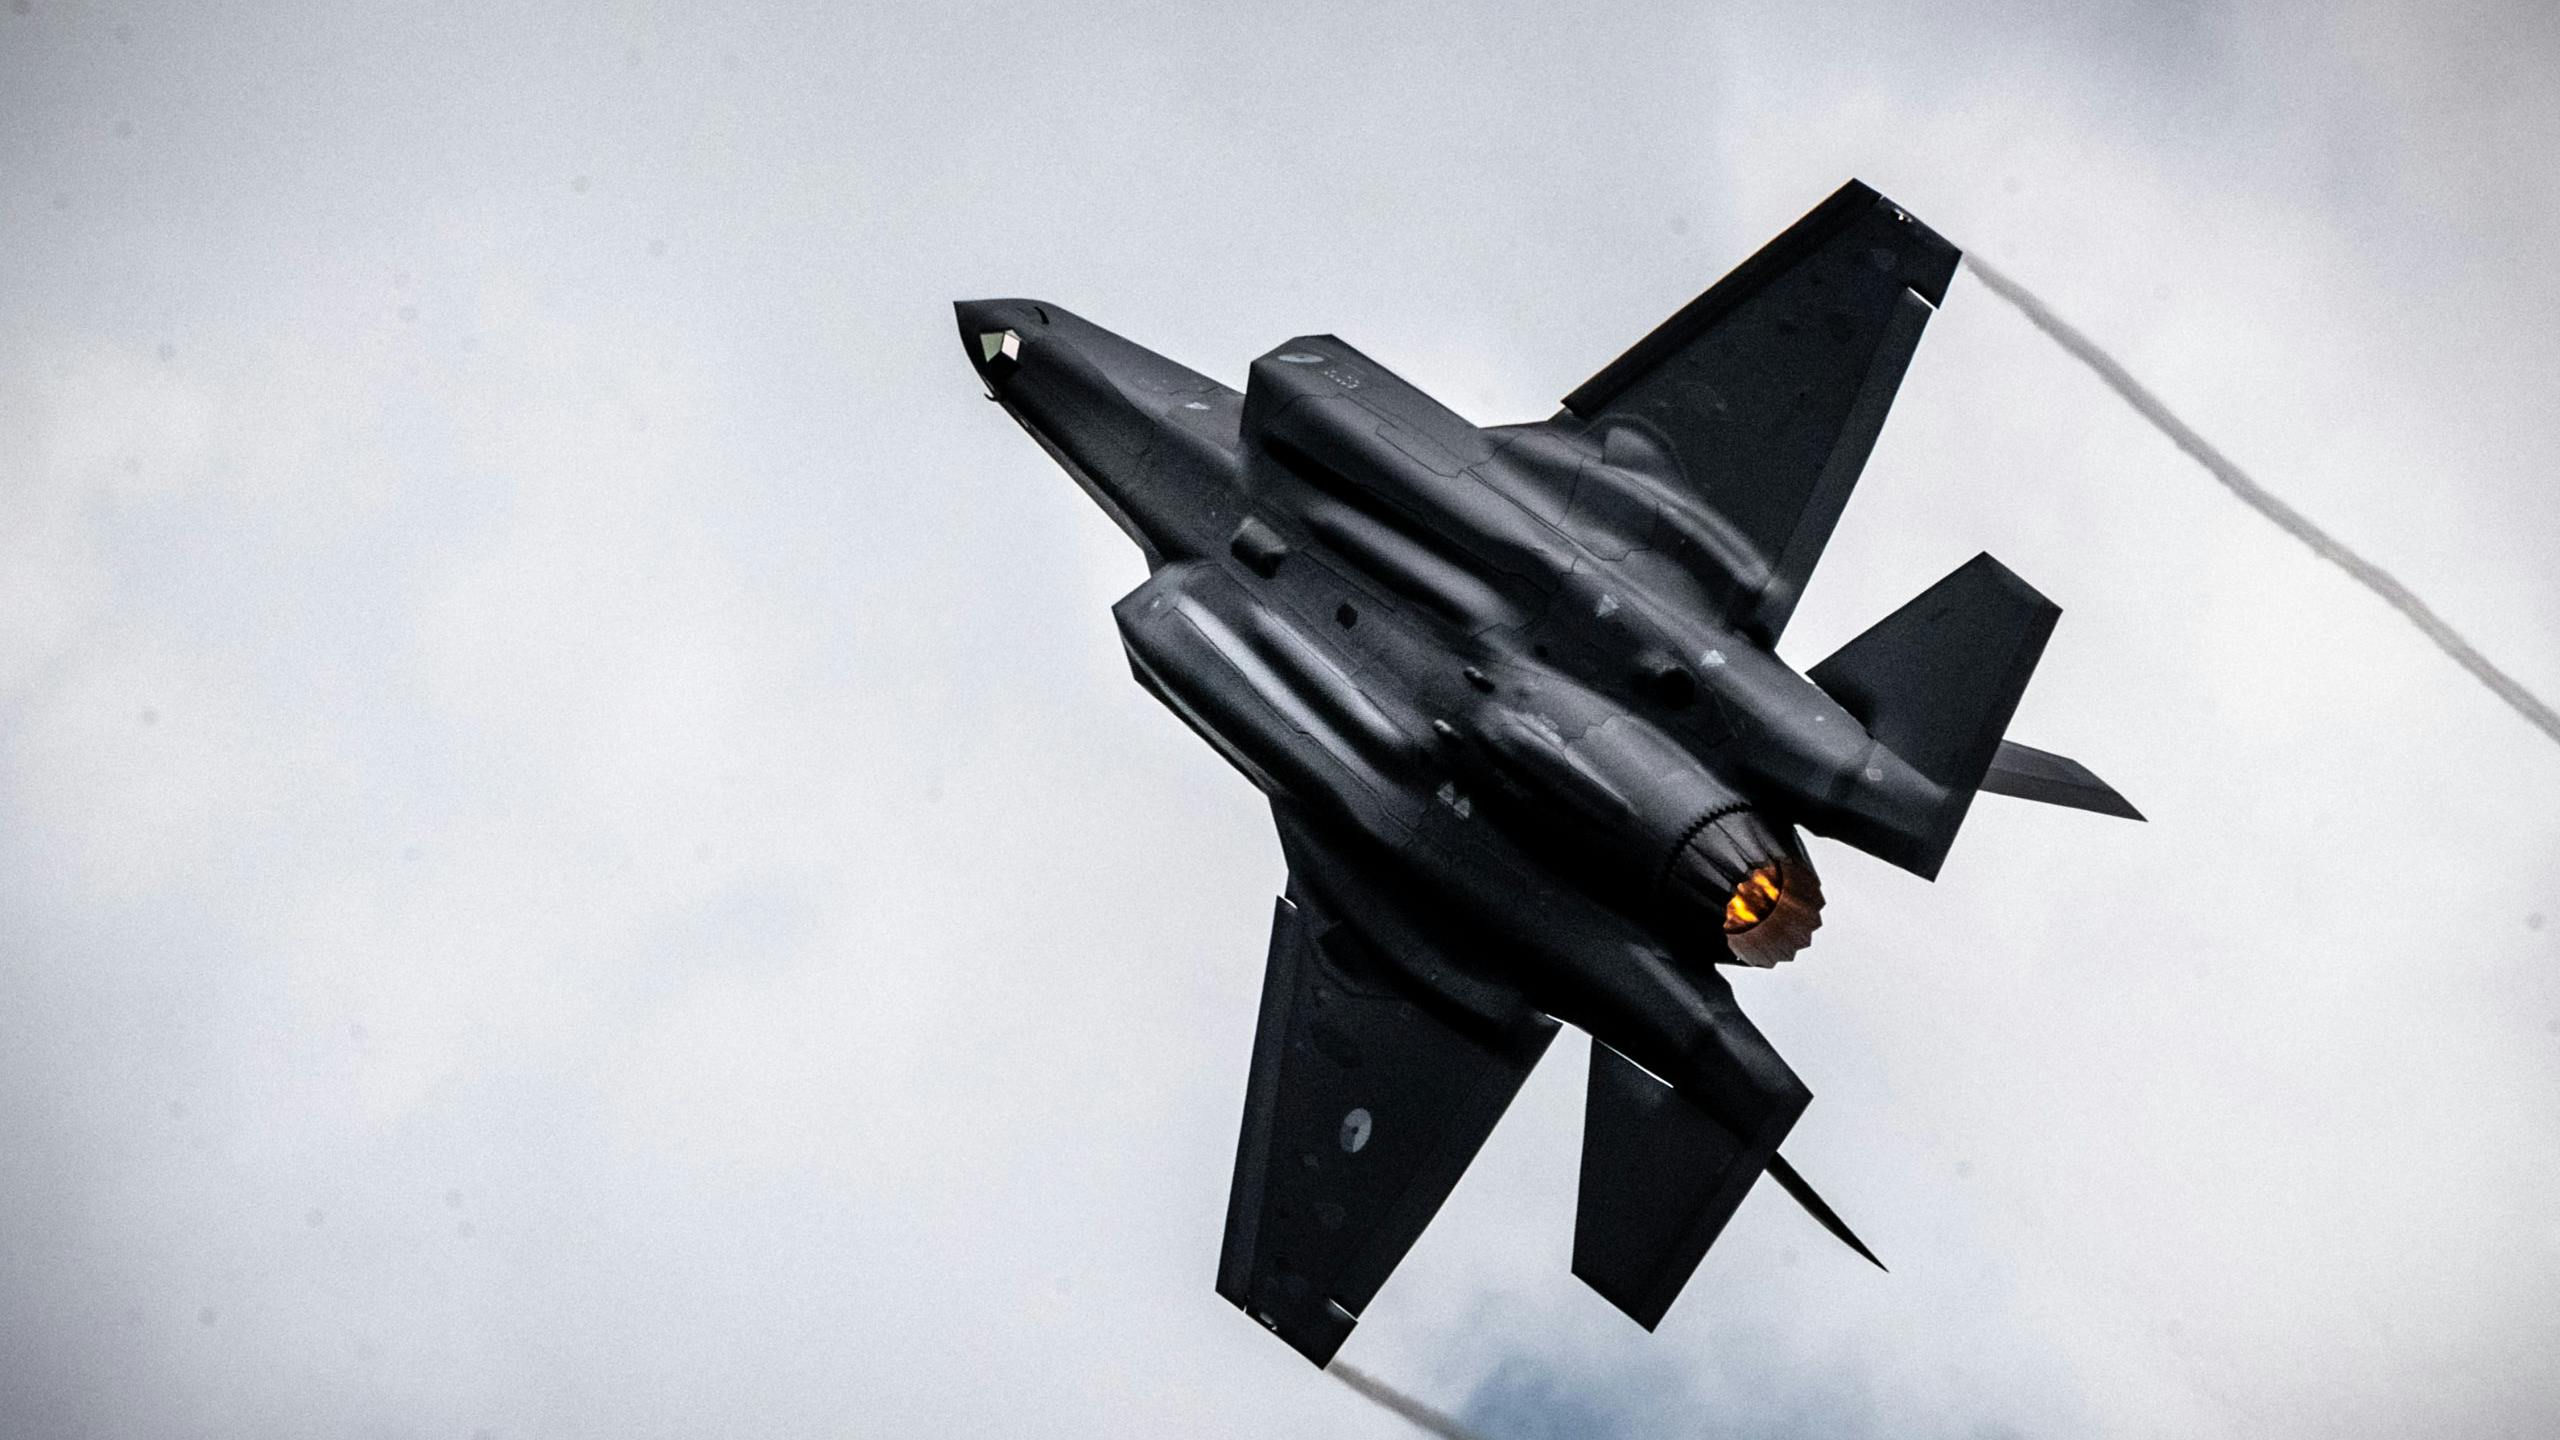 De eerste Nederlandse F-35, de Joint Strike Fighter, in actie tijdens de Luchtmachtdagen 2019 op vliegbasis Volkel. ANP ROB ENGELAAR